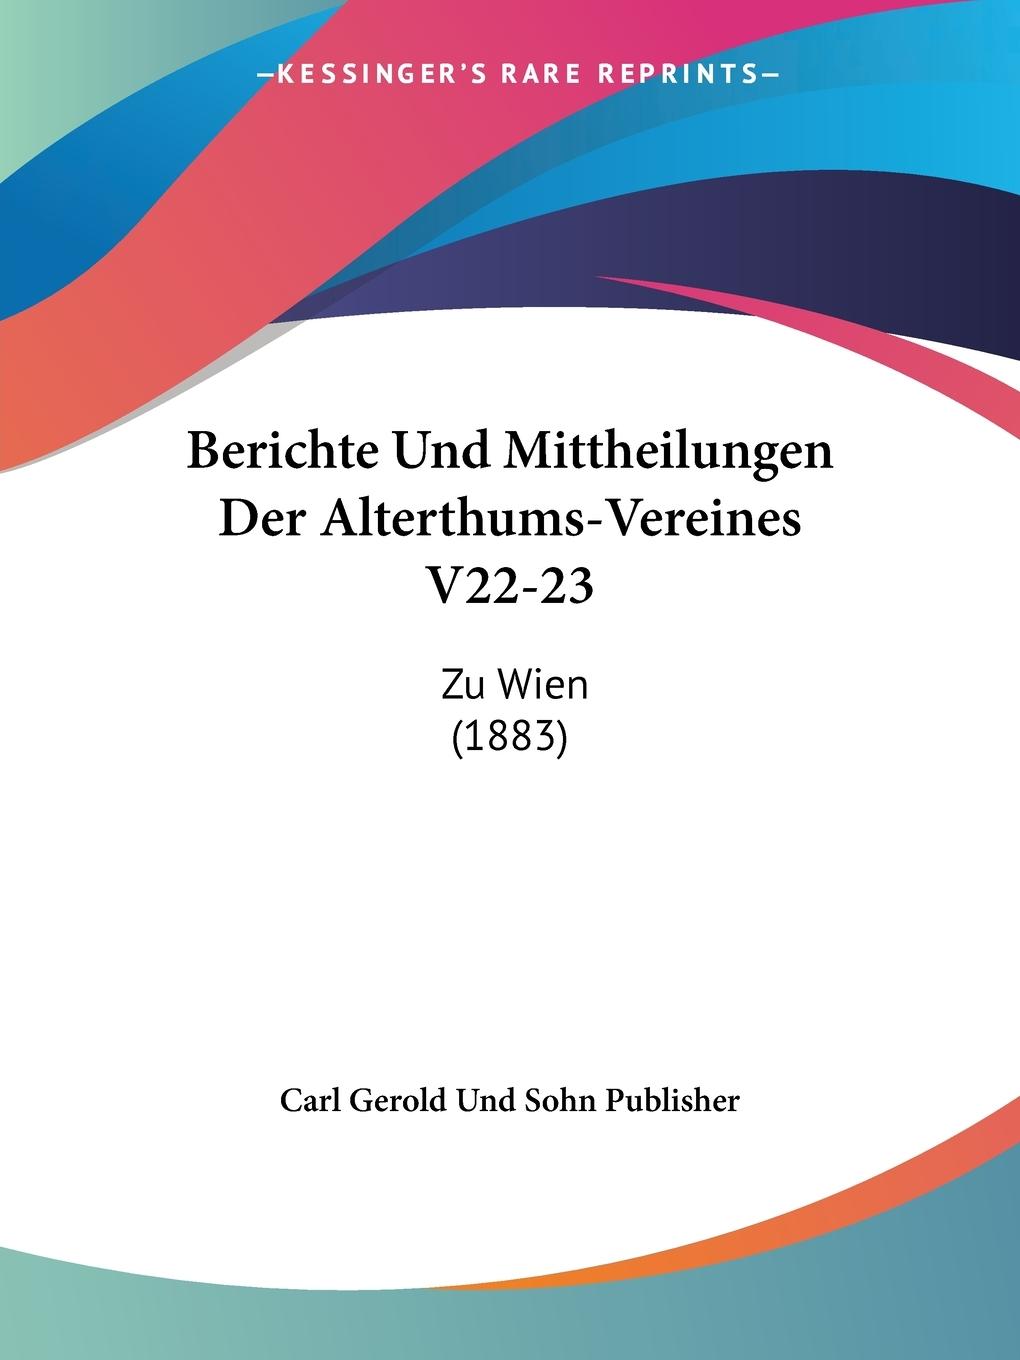 Berichte Und Mittheilungen Der Alterthums-Vereines V22-23 - Carl Gerold Und Sohn Publisher